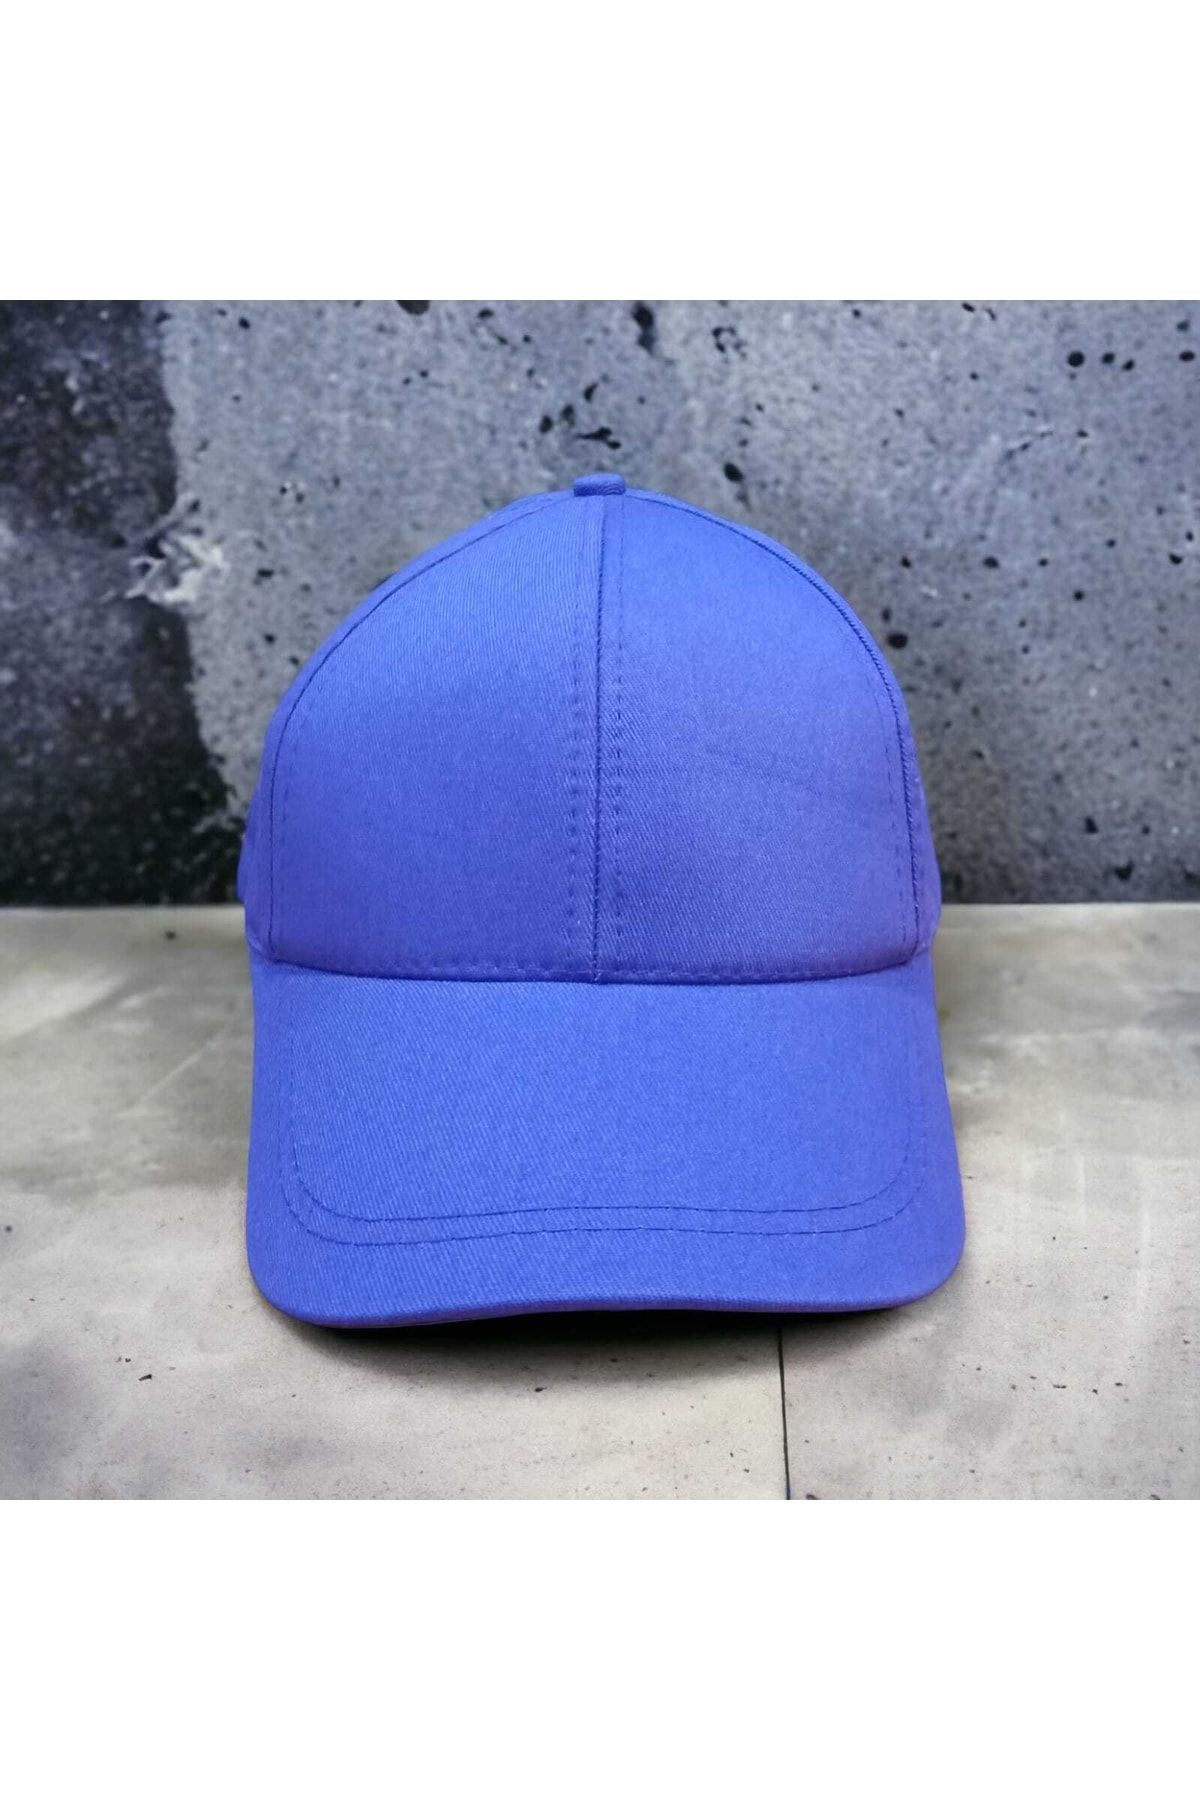 salarticaret Mavi Renk Şapka Ayarlanabilir Unisex Model